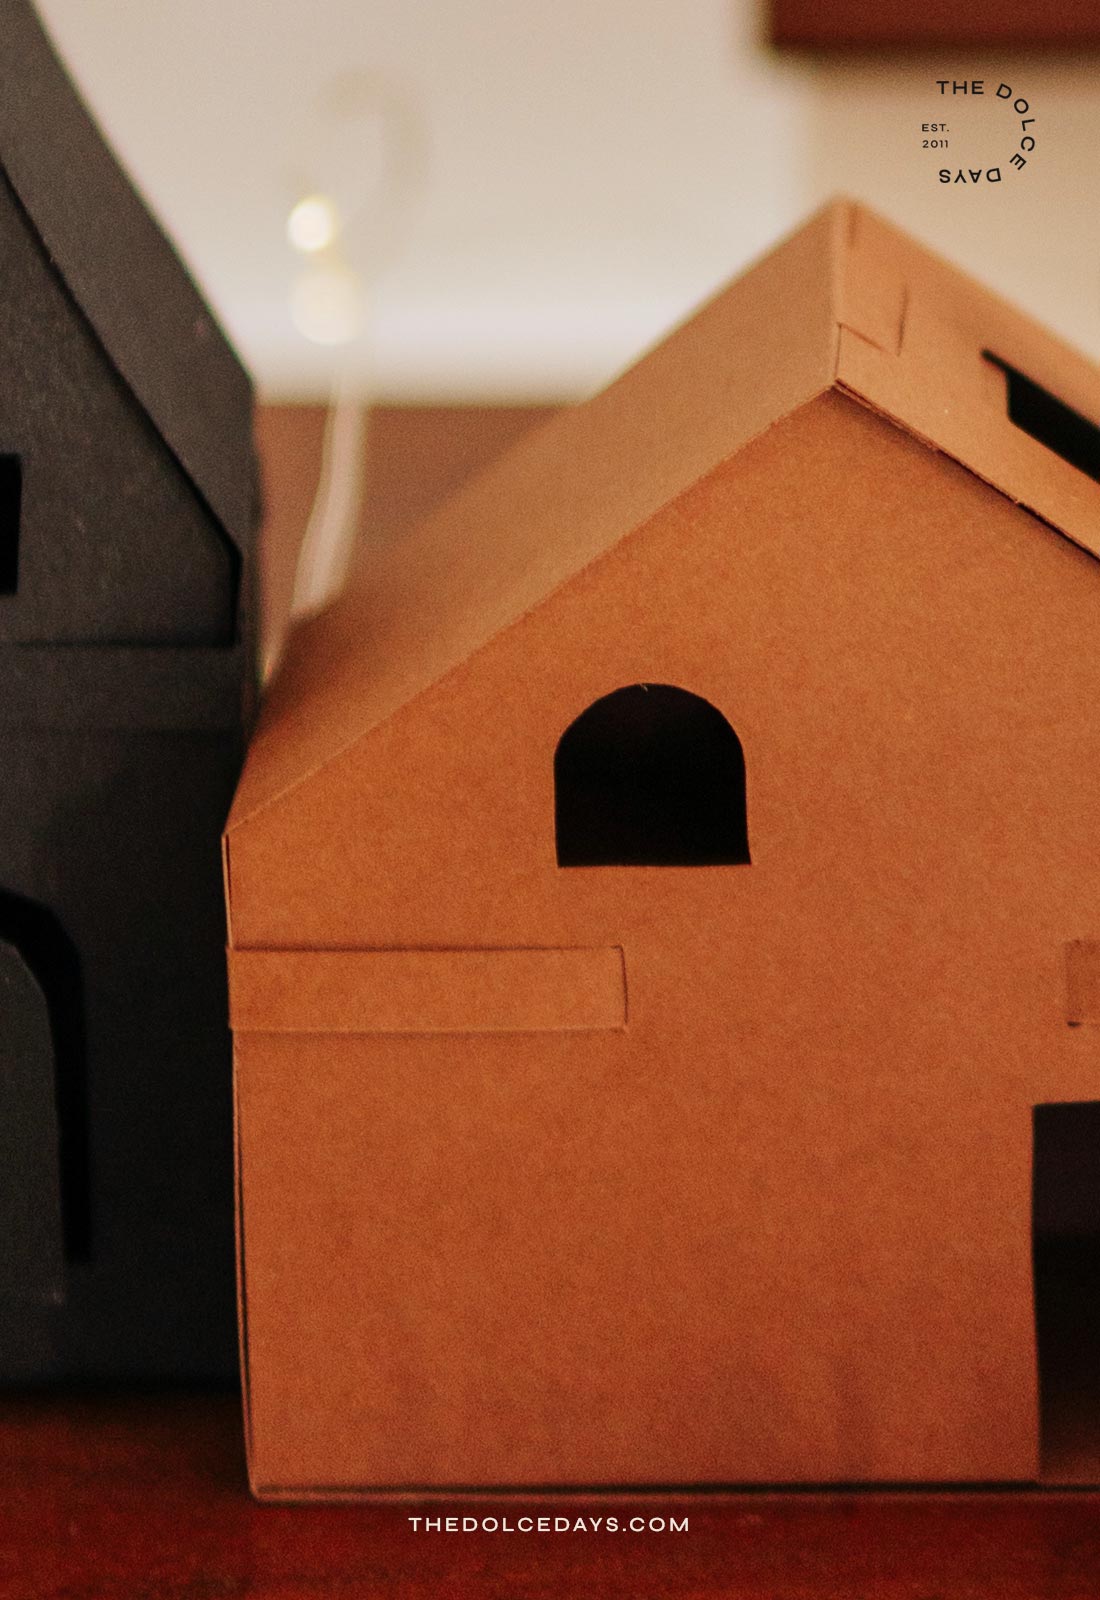 Detalhe de uma casinha da vila natalina feita em casa com papel